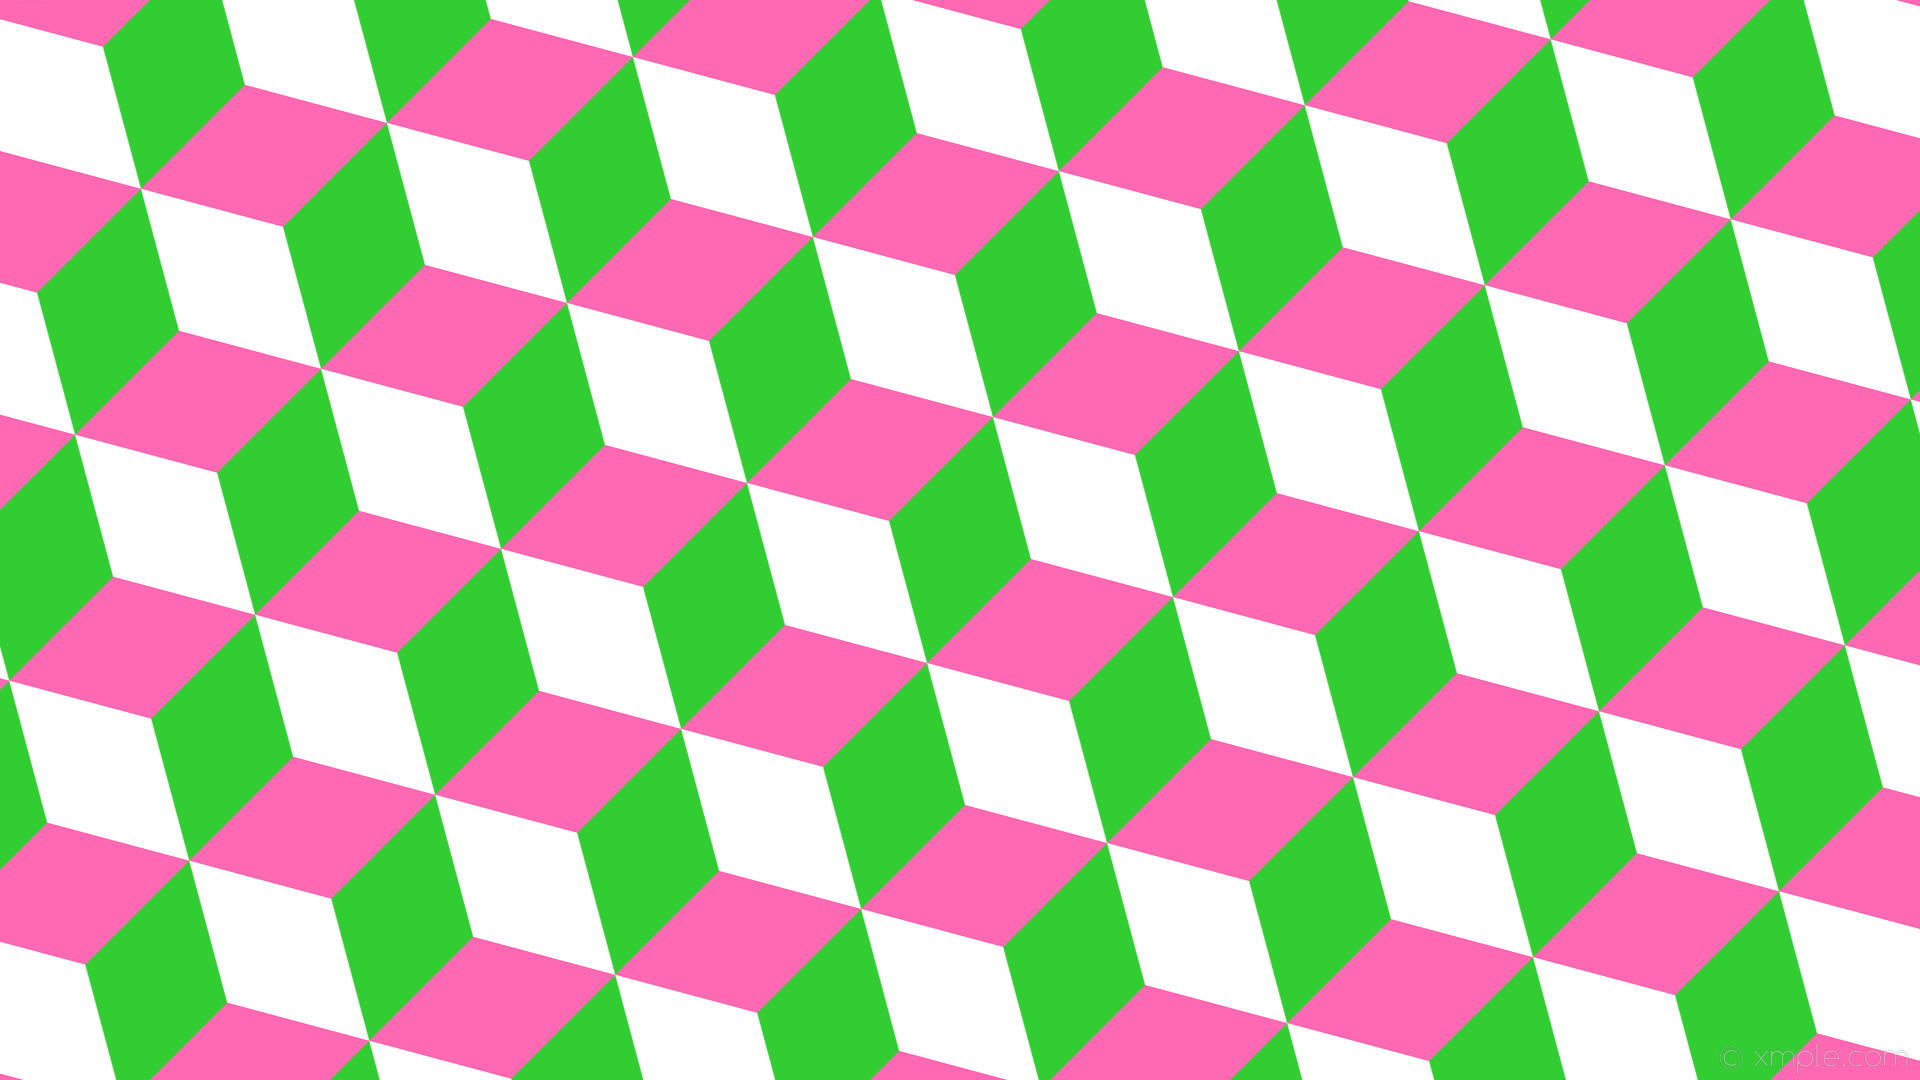 1920x1080 wallpaper green pink white 3d cubes lime green hot pink #32cd32 #ff69b4  #ffffff